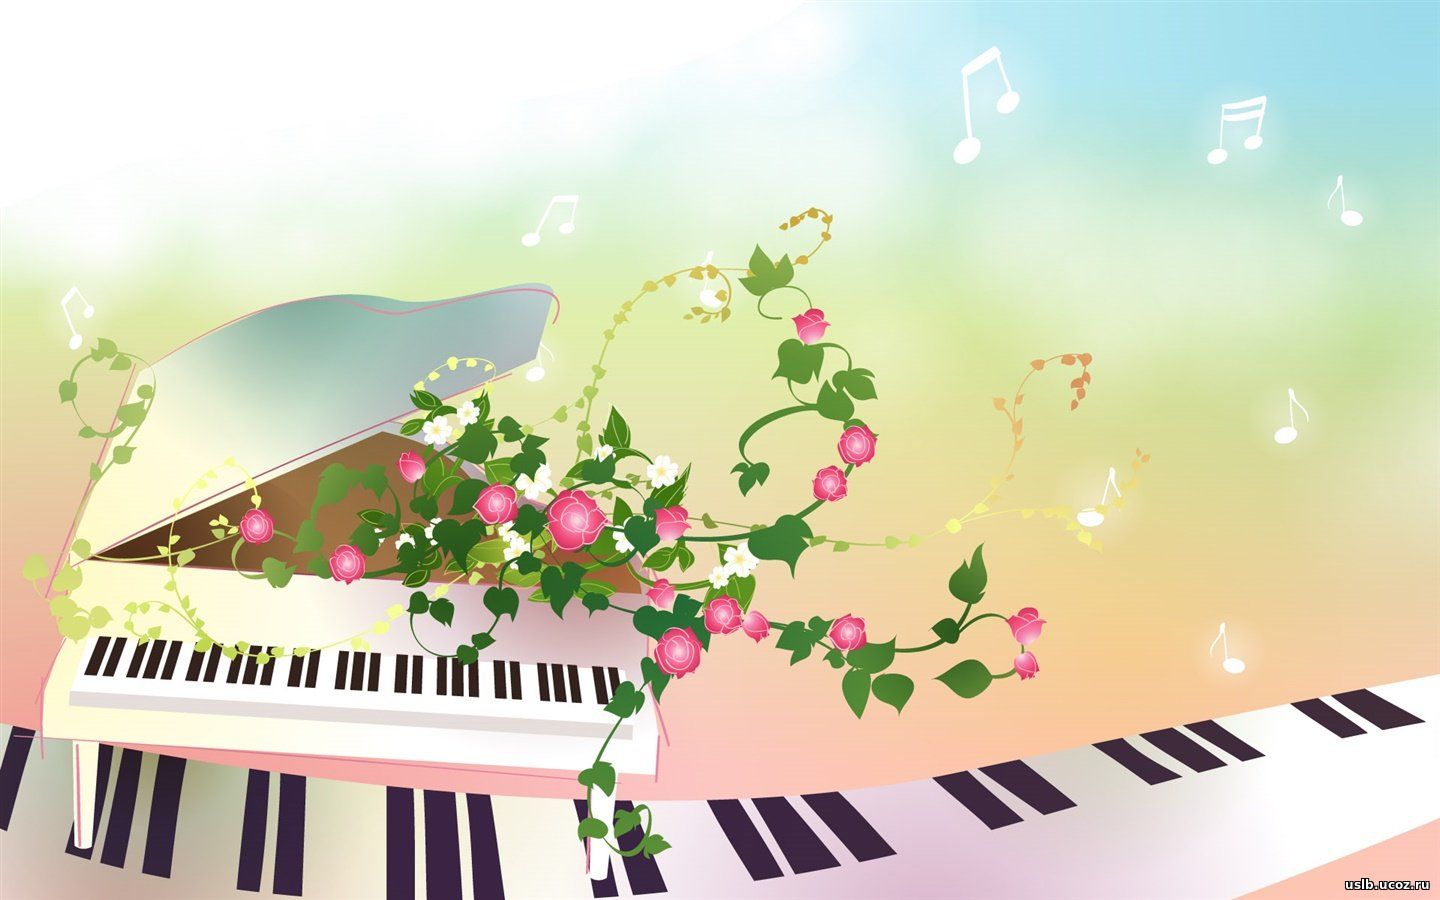 На заставке на переднем фоне изображена лента из клавиш рояля. За ней изображен рояль, из открытой крышки которого растут цветы